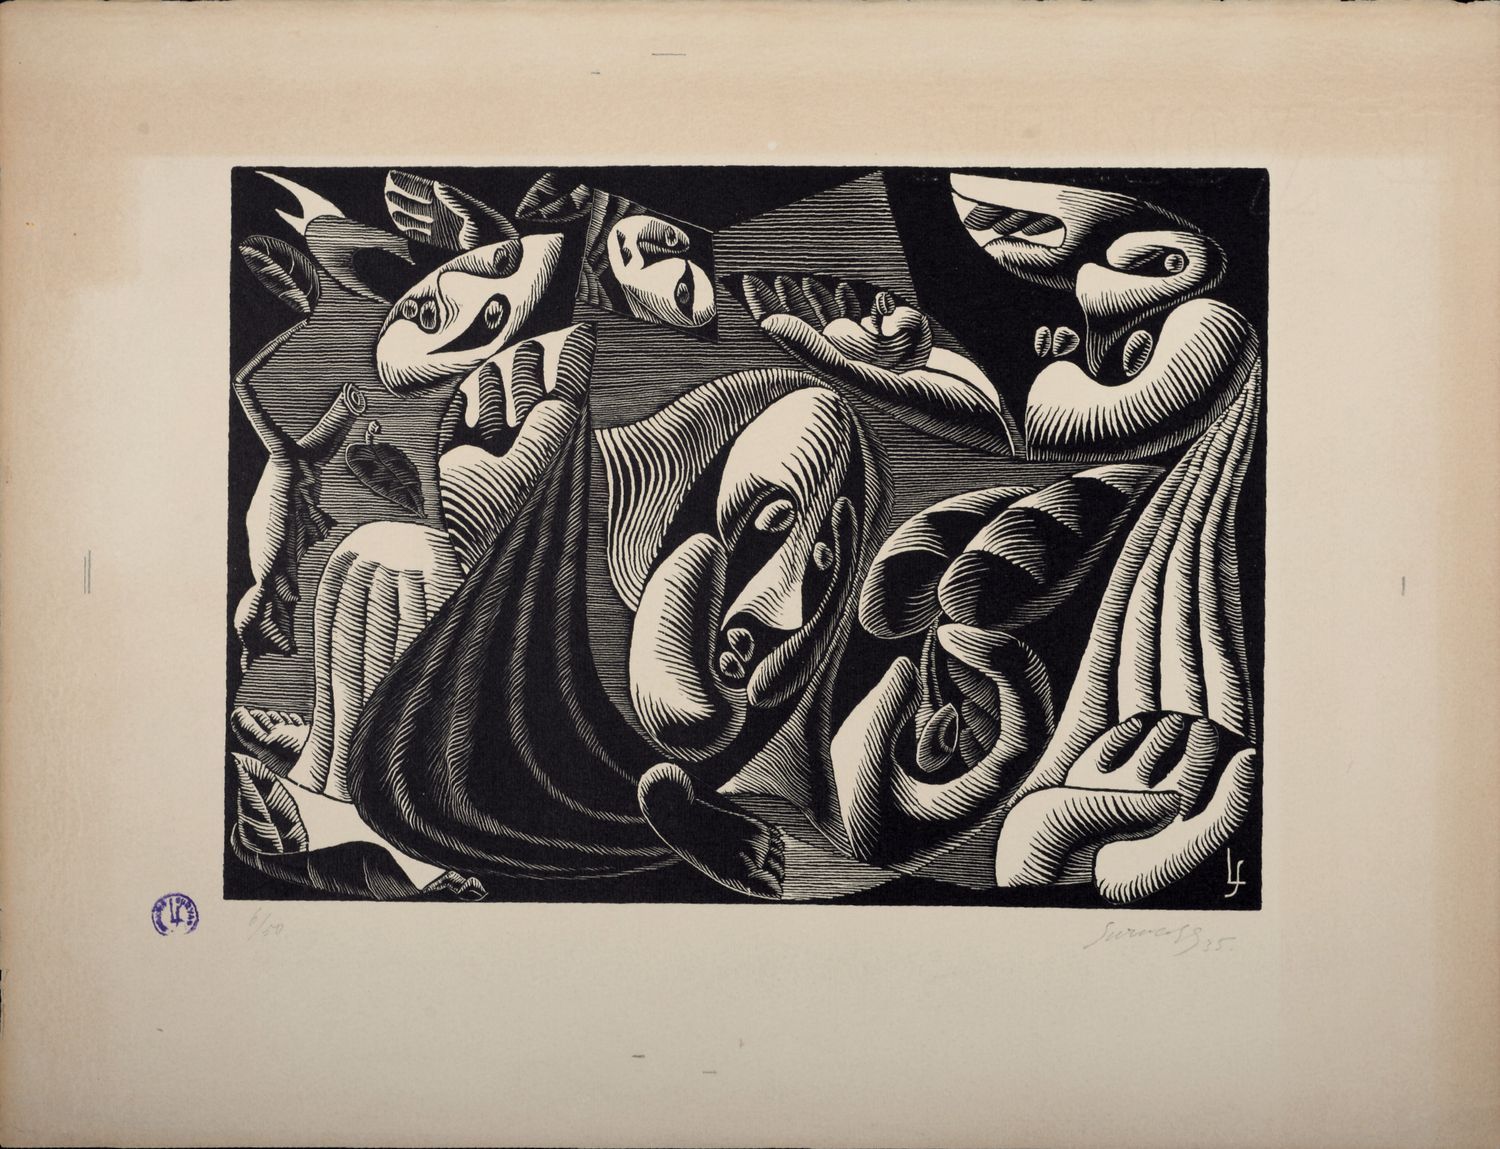 Léopold SURVAGE Leopold Survage (1879-1968)

Surrealist Composition XXII, 1935

&hellip;